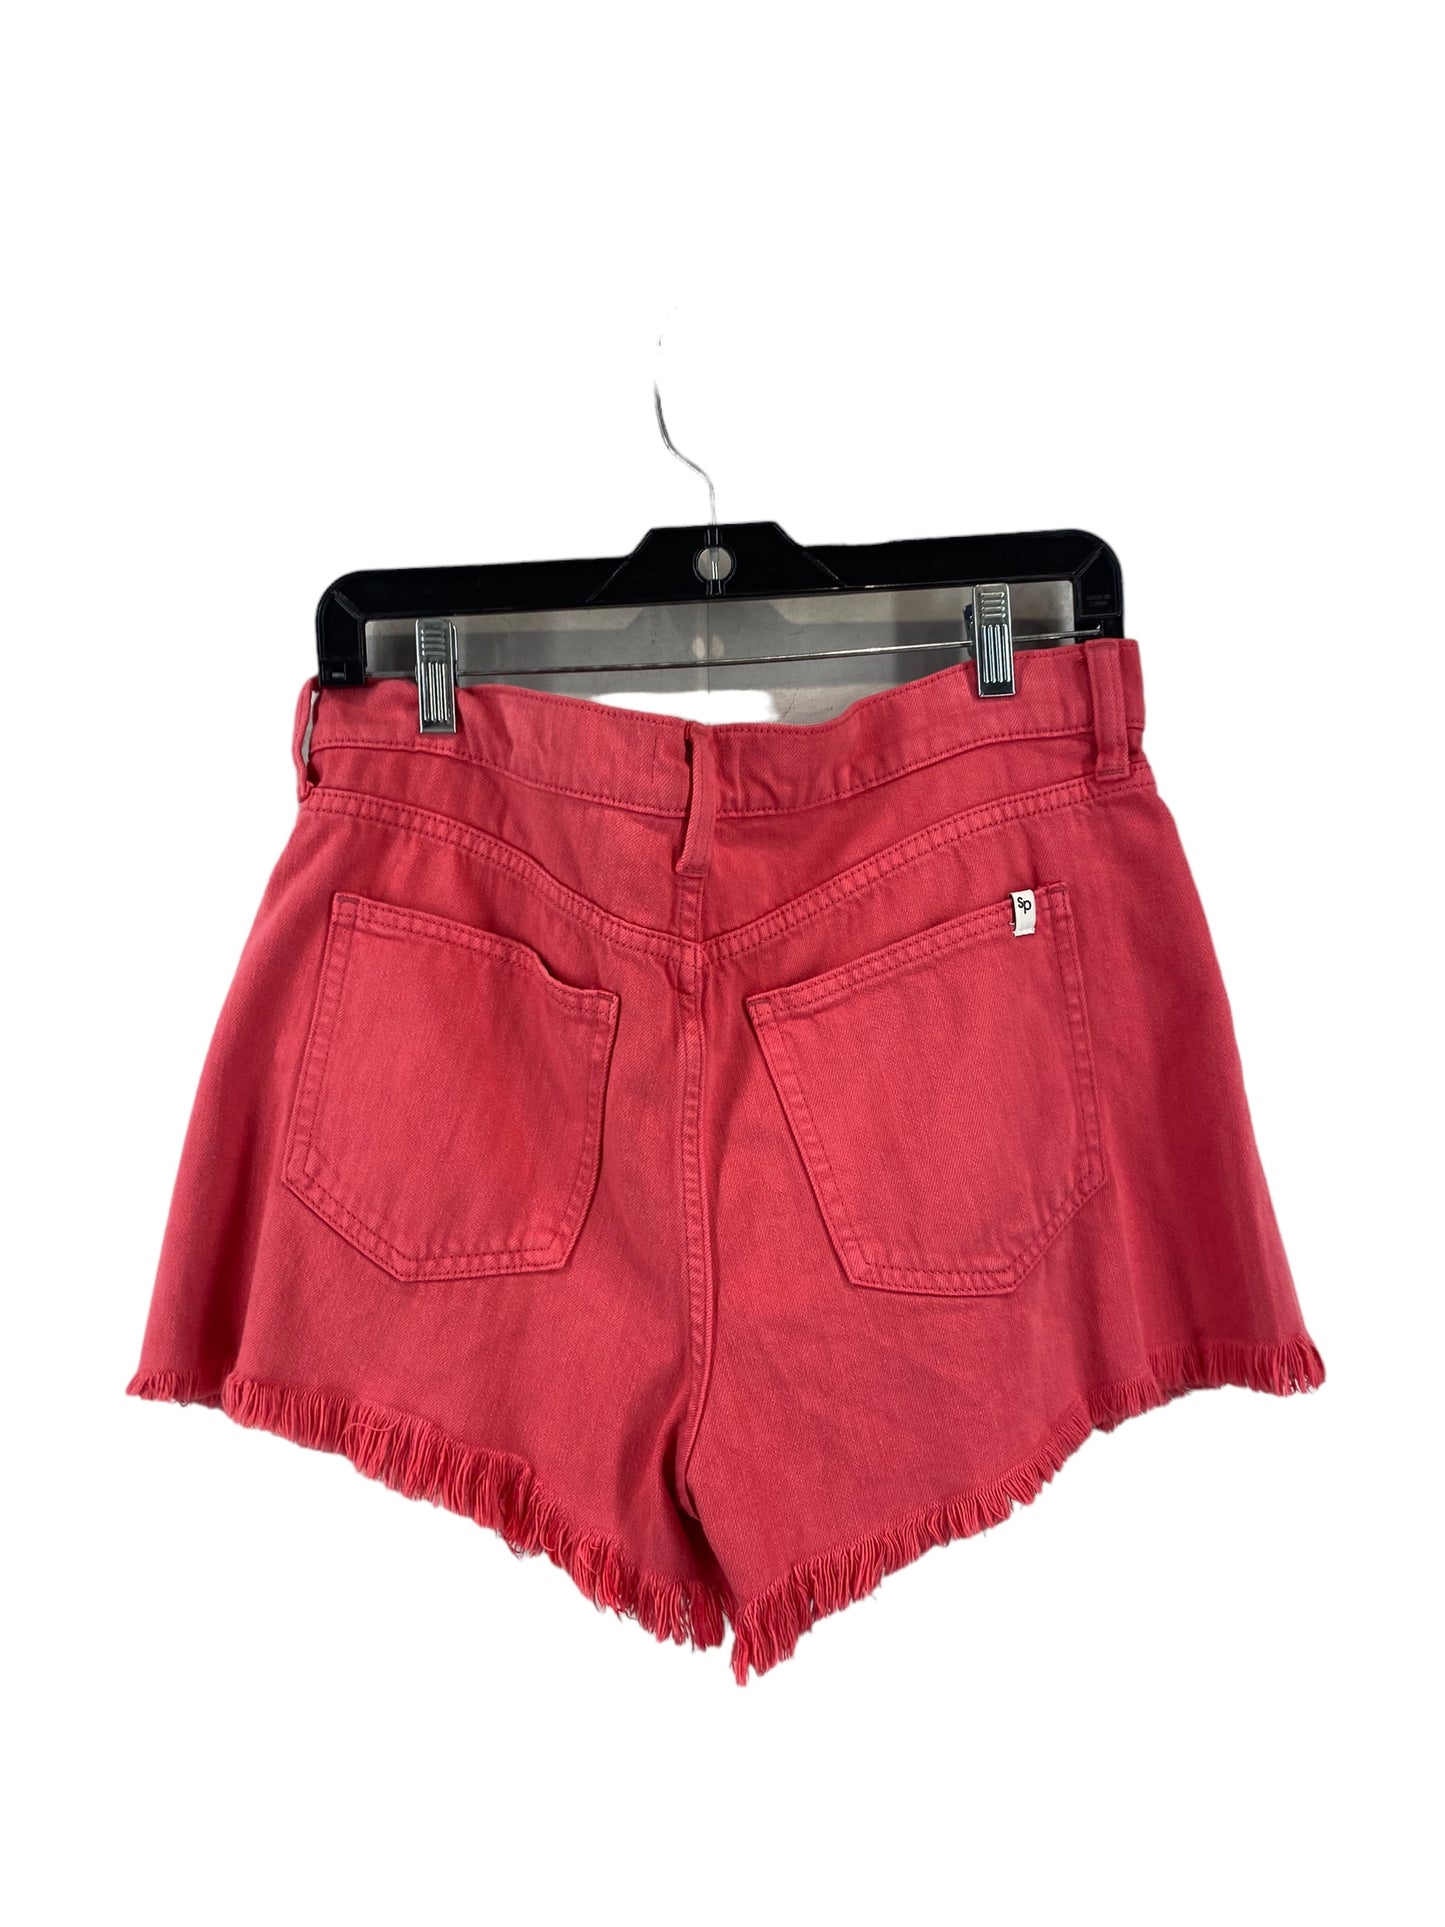 Shorts By Sneak Peek  Size: L